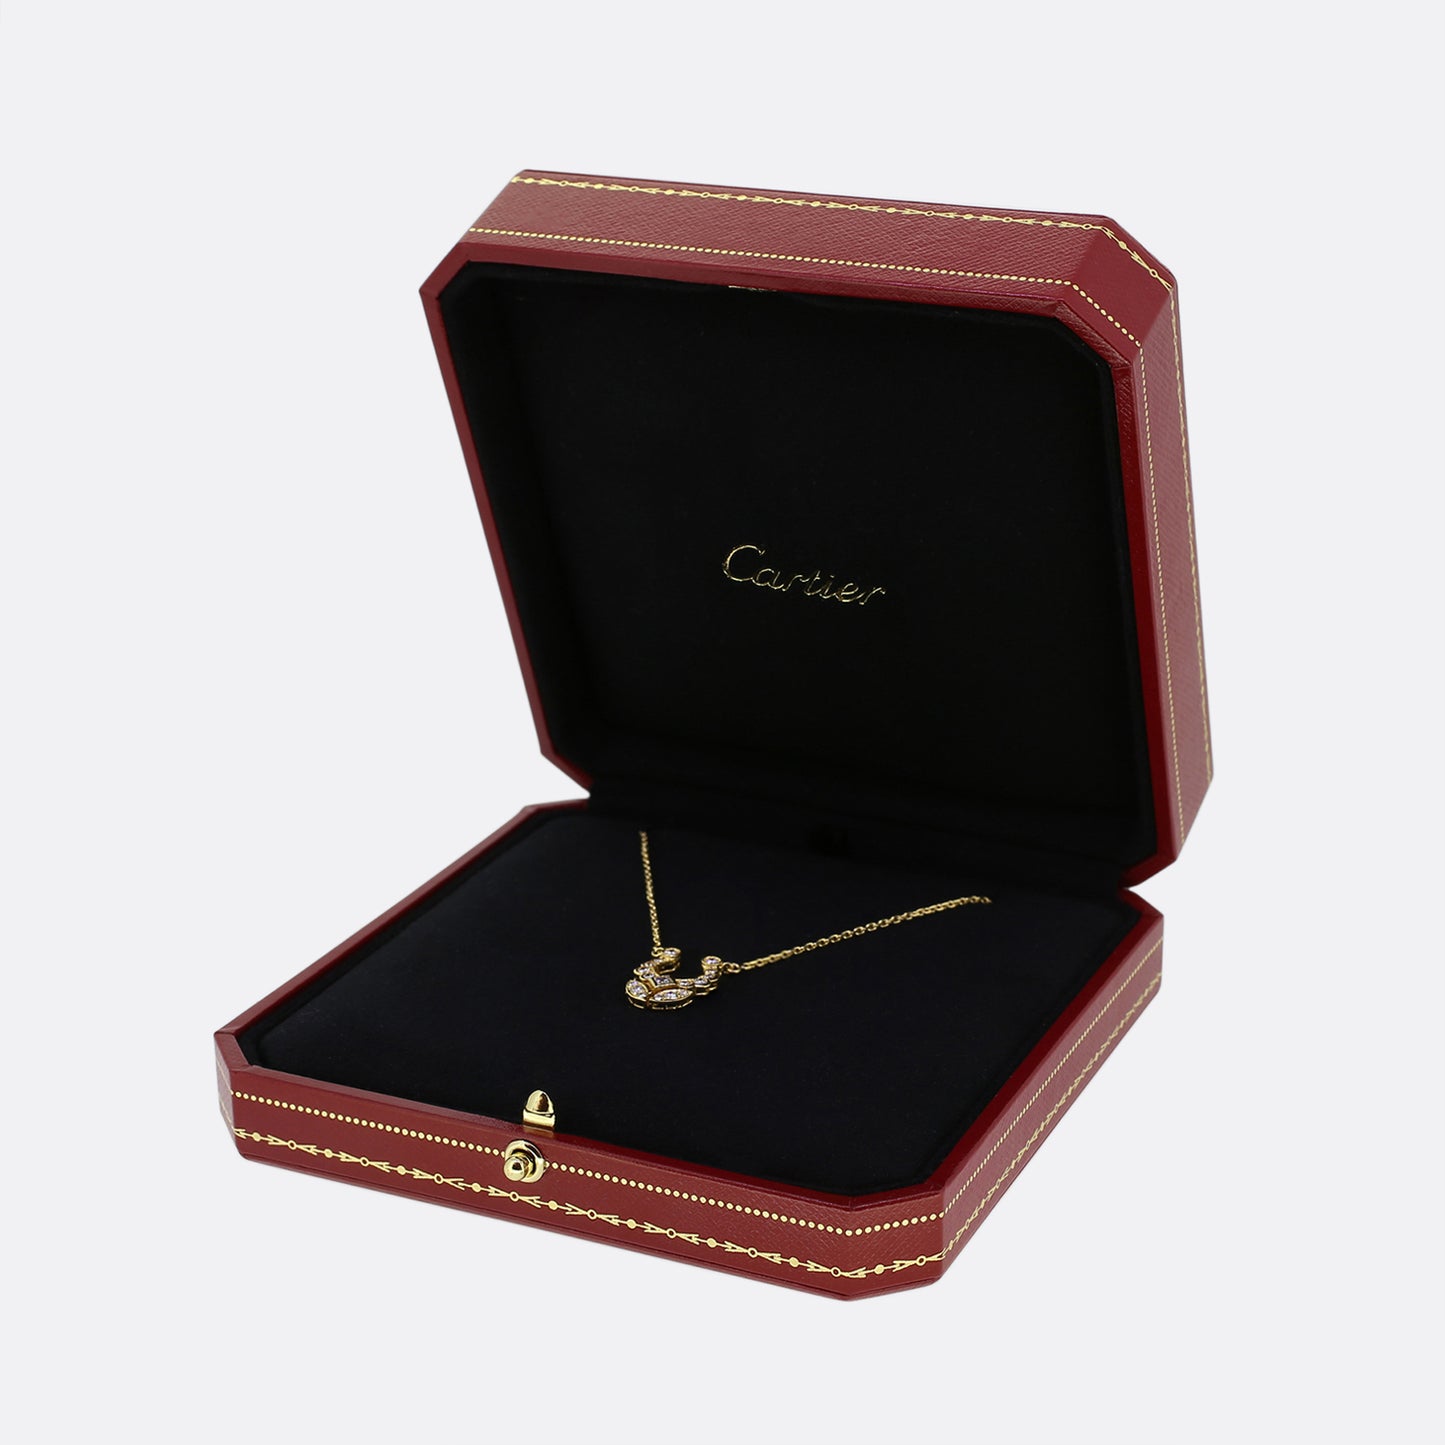 Cartier Vintage Horseshoe Diamond Pendant Necklace